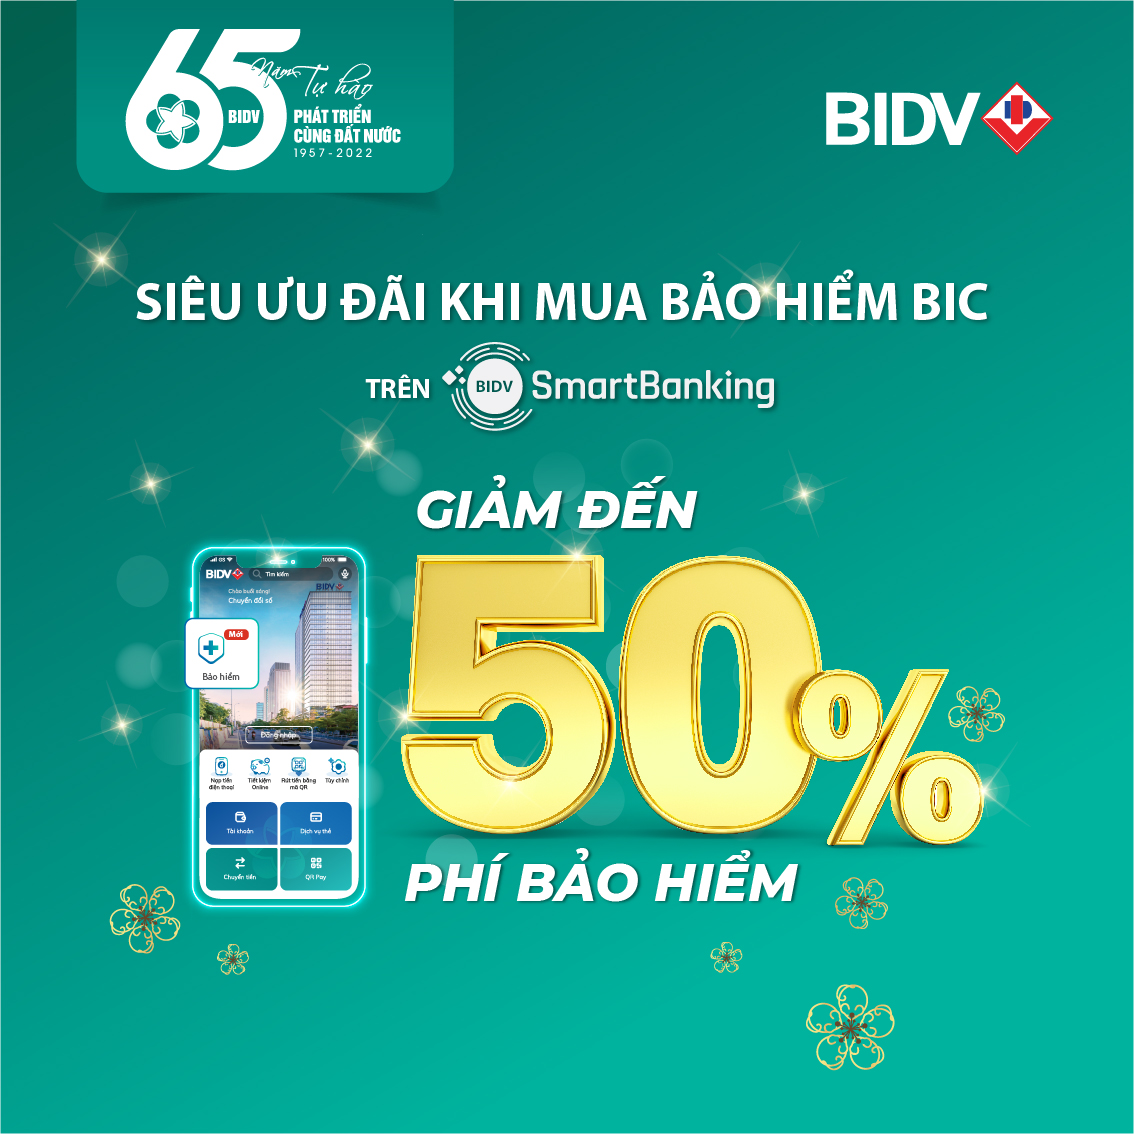 Tài chính - Ngân hàng - Ưu đãi tới 50% khi mua bảo hiểm BIC qua ứng dụng BIDV SmartBanking